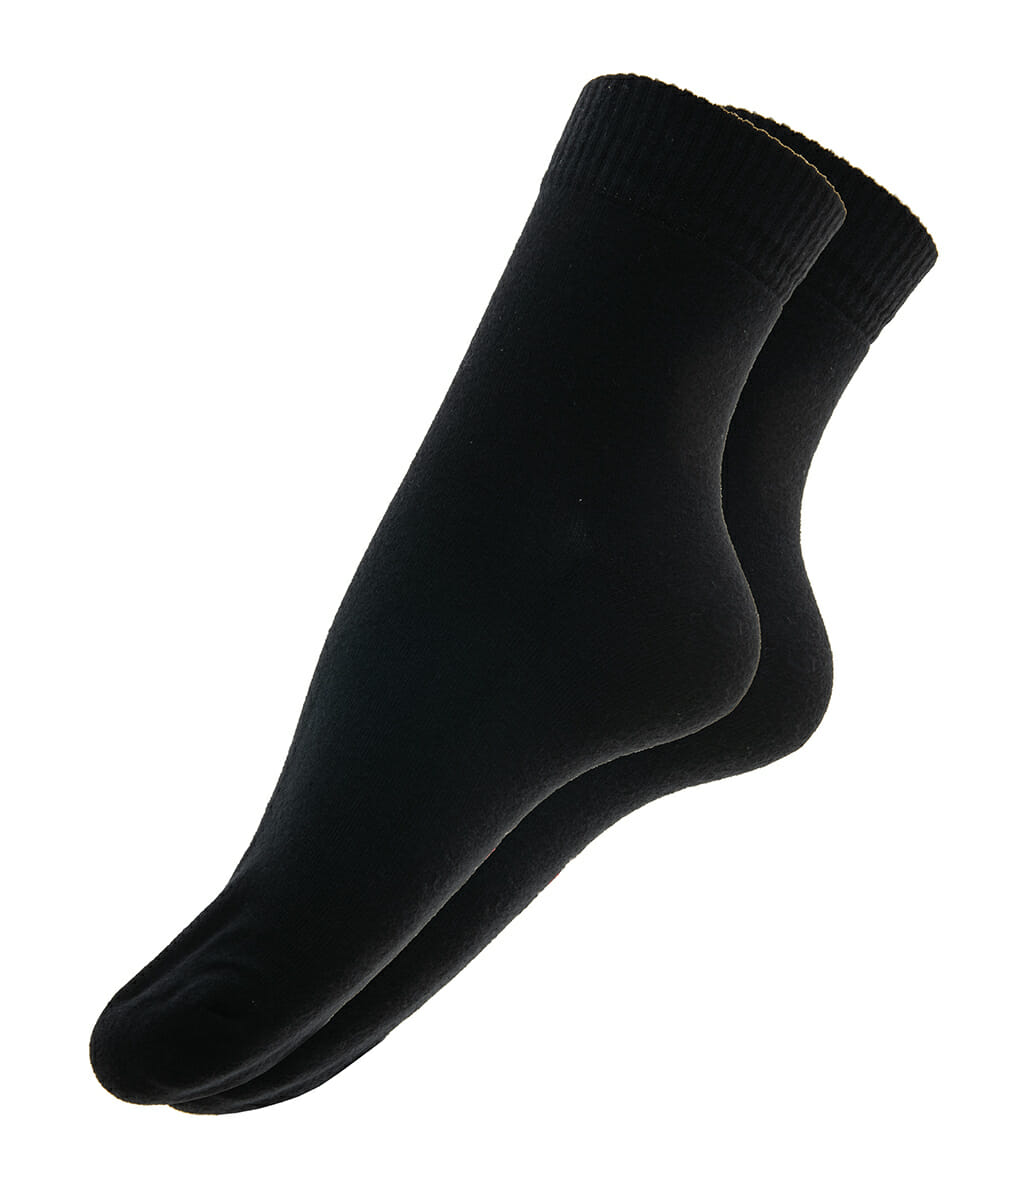 Γυναικεία αθλητική ημίκοντη κάλτσα μαύρη 5046 Μαύρο